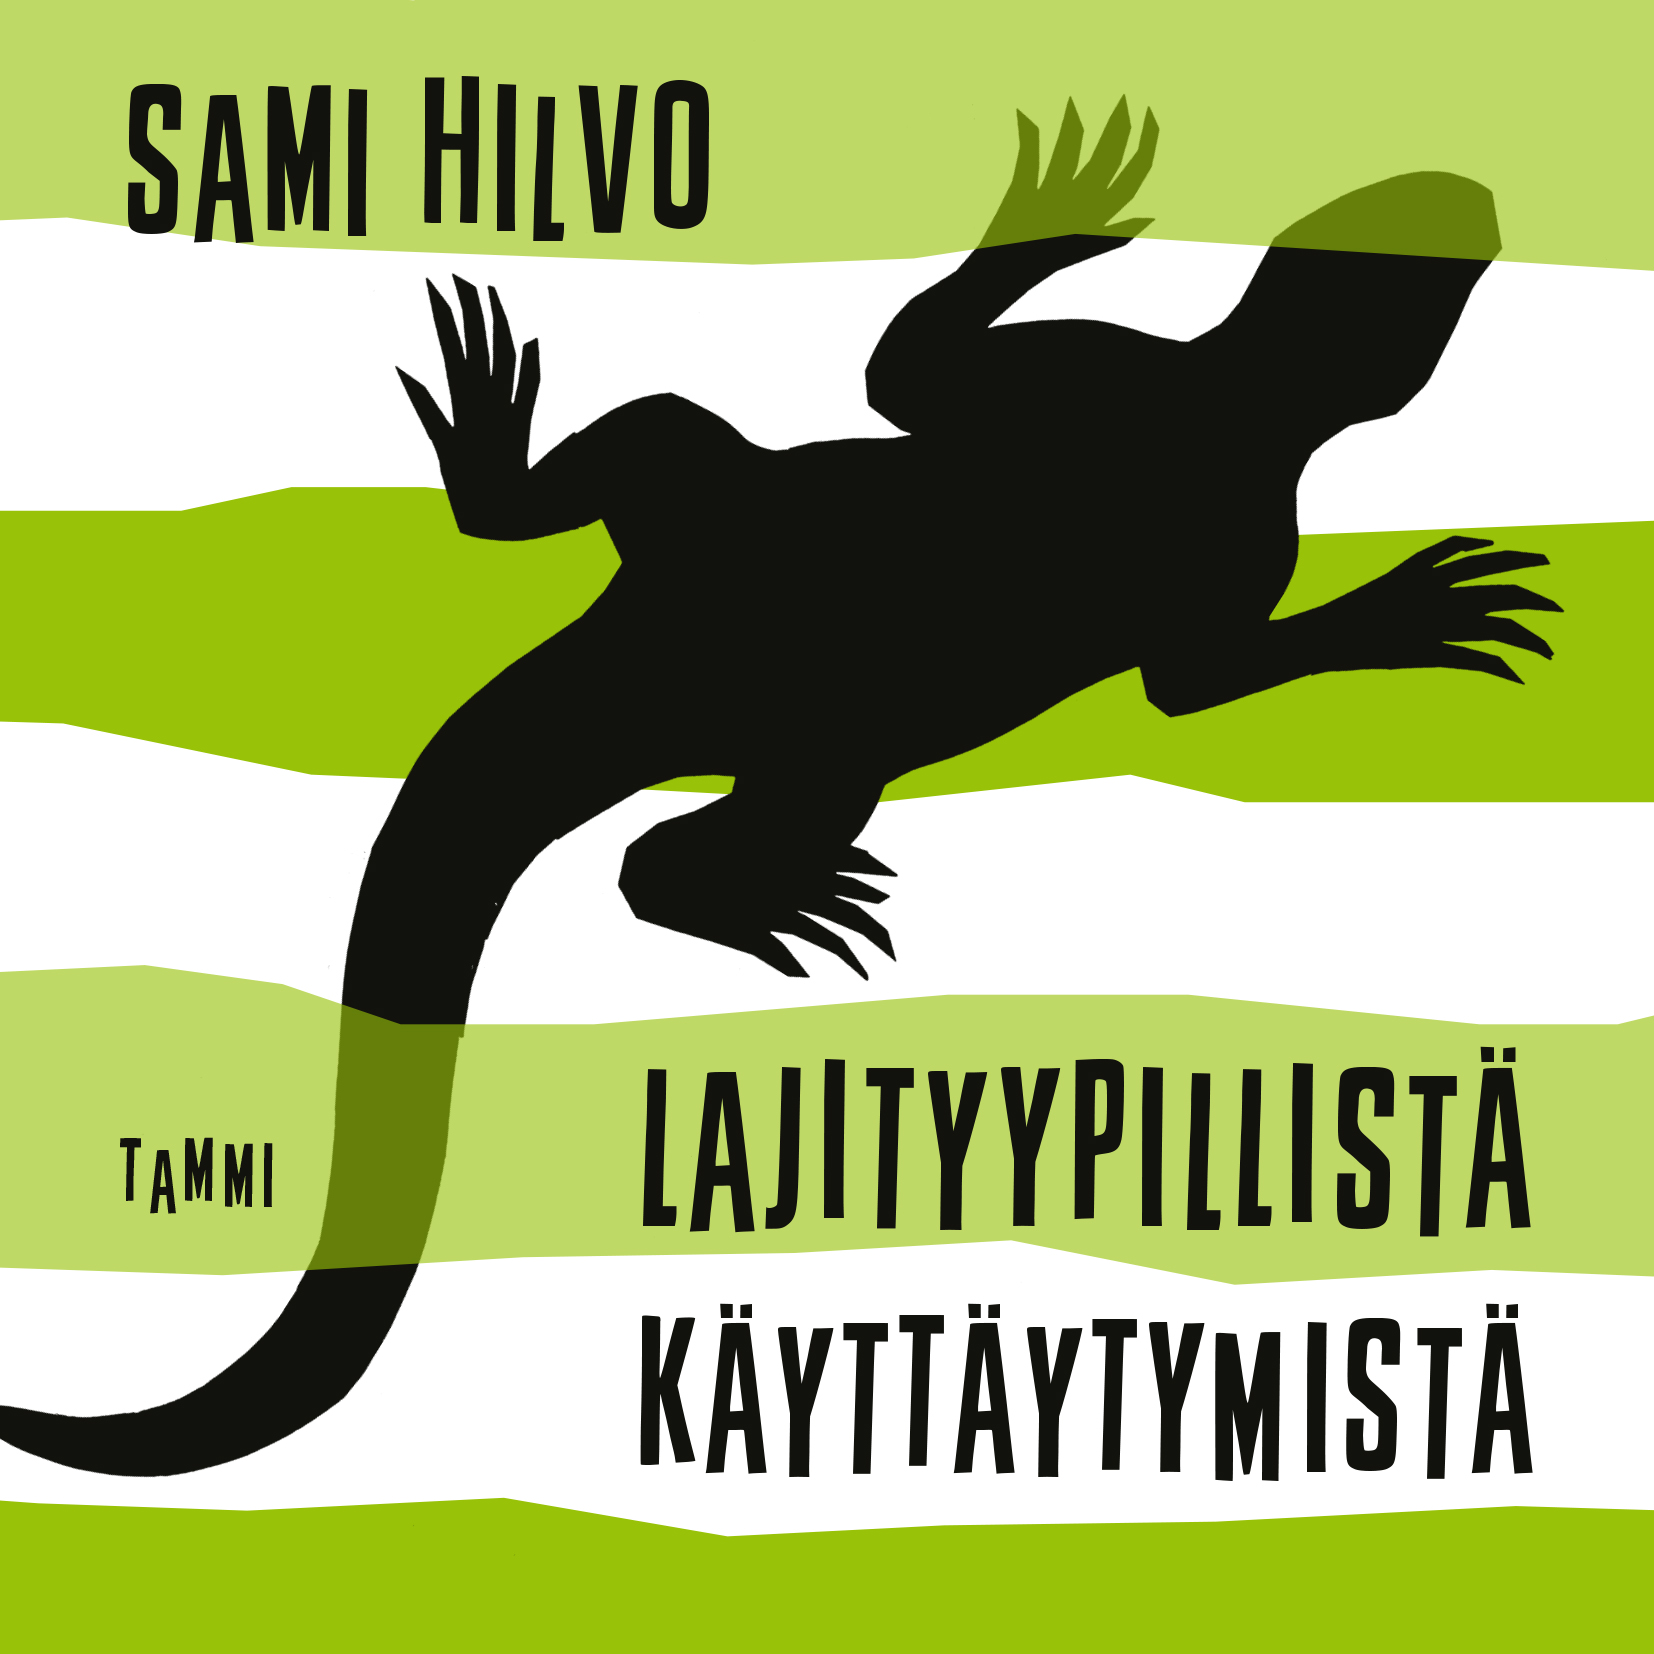 Hilvo, Sami - Lajityypillistä käyttäytymistä, audiobook